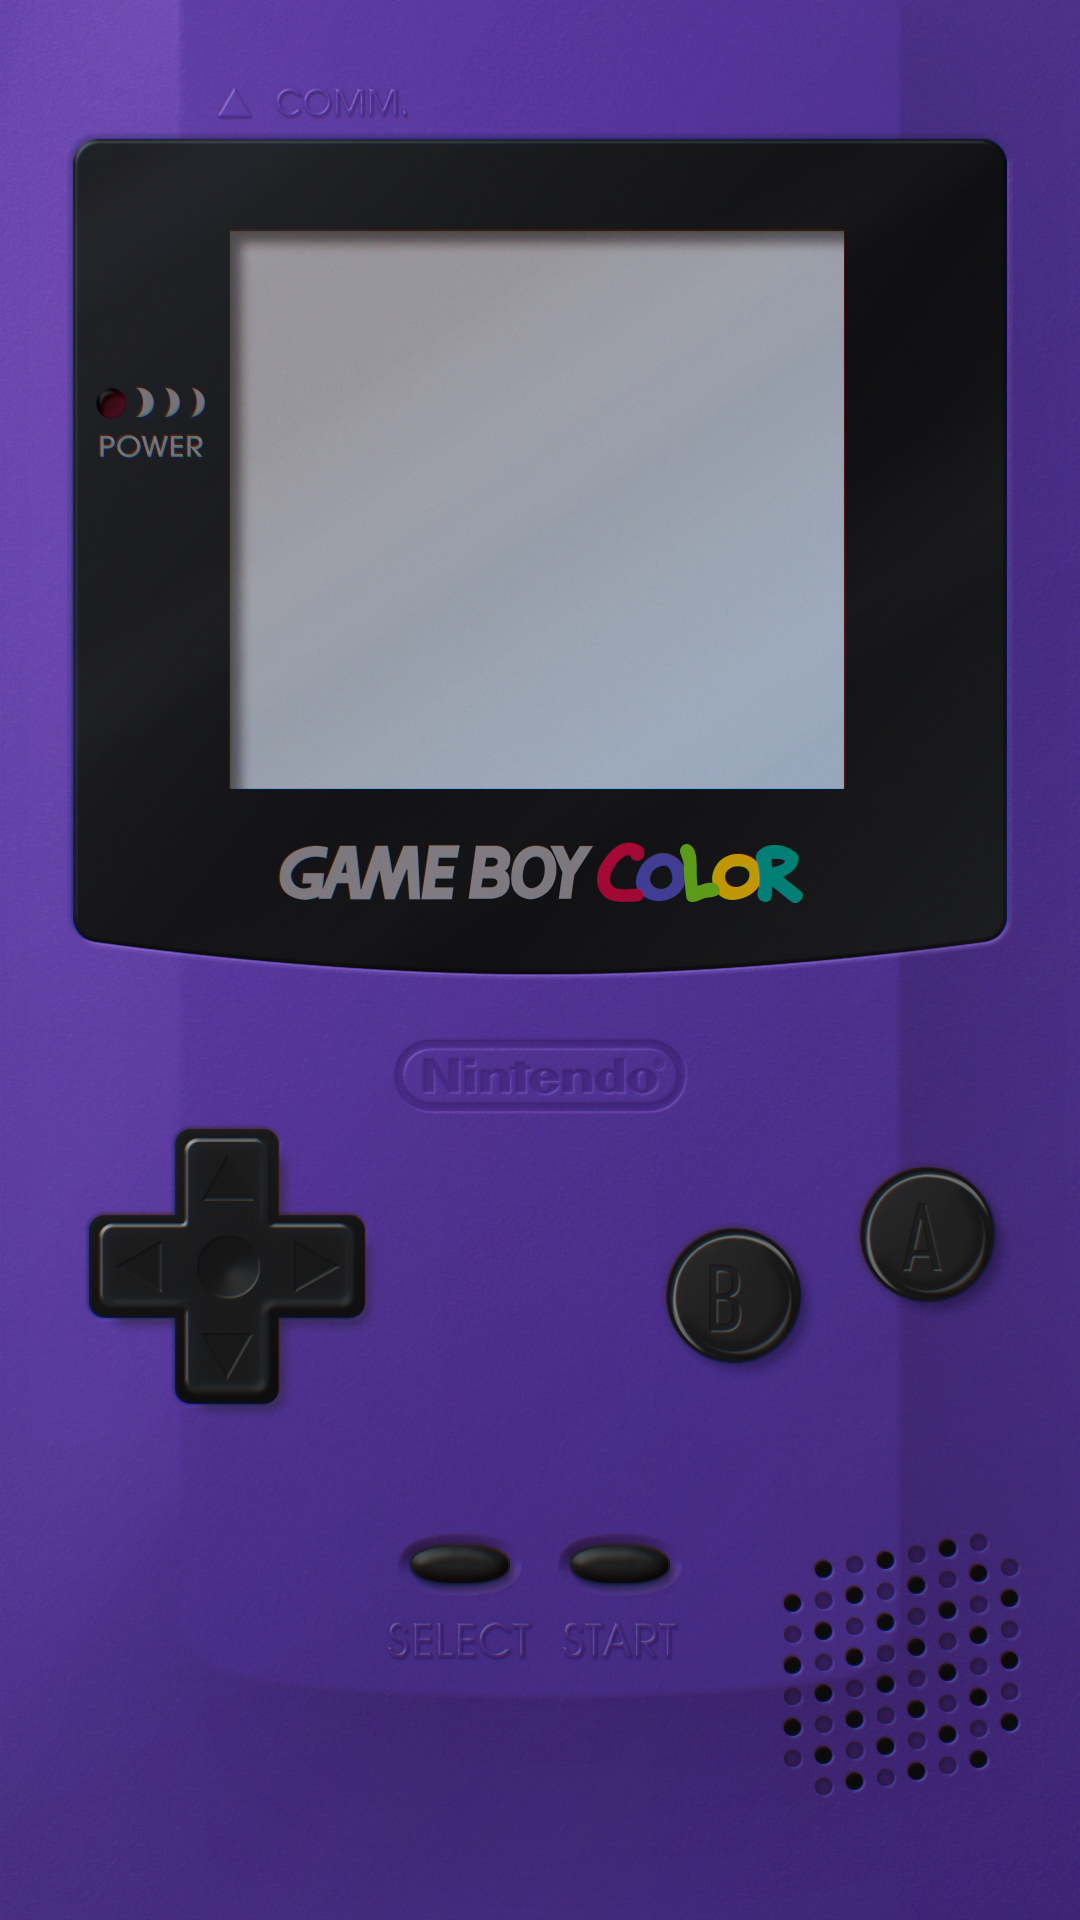 Game Boy Color là một trong những phiên bản cổ điển nhất và đặc biệt của Gameboy. Hãy xem hình ảnh về Game Boy Color để nhìn thấy sự tươi sáng và đặc biệt của màn hình màu sắc của nó.